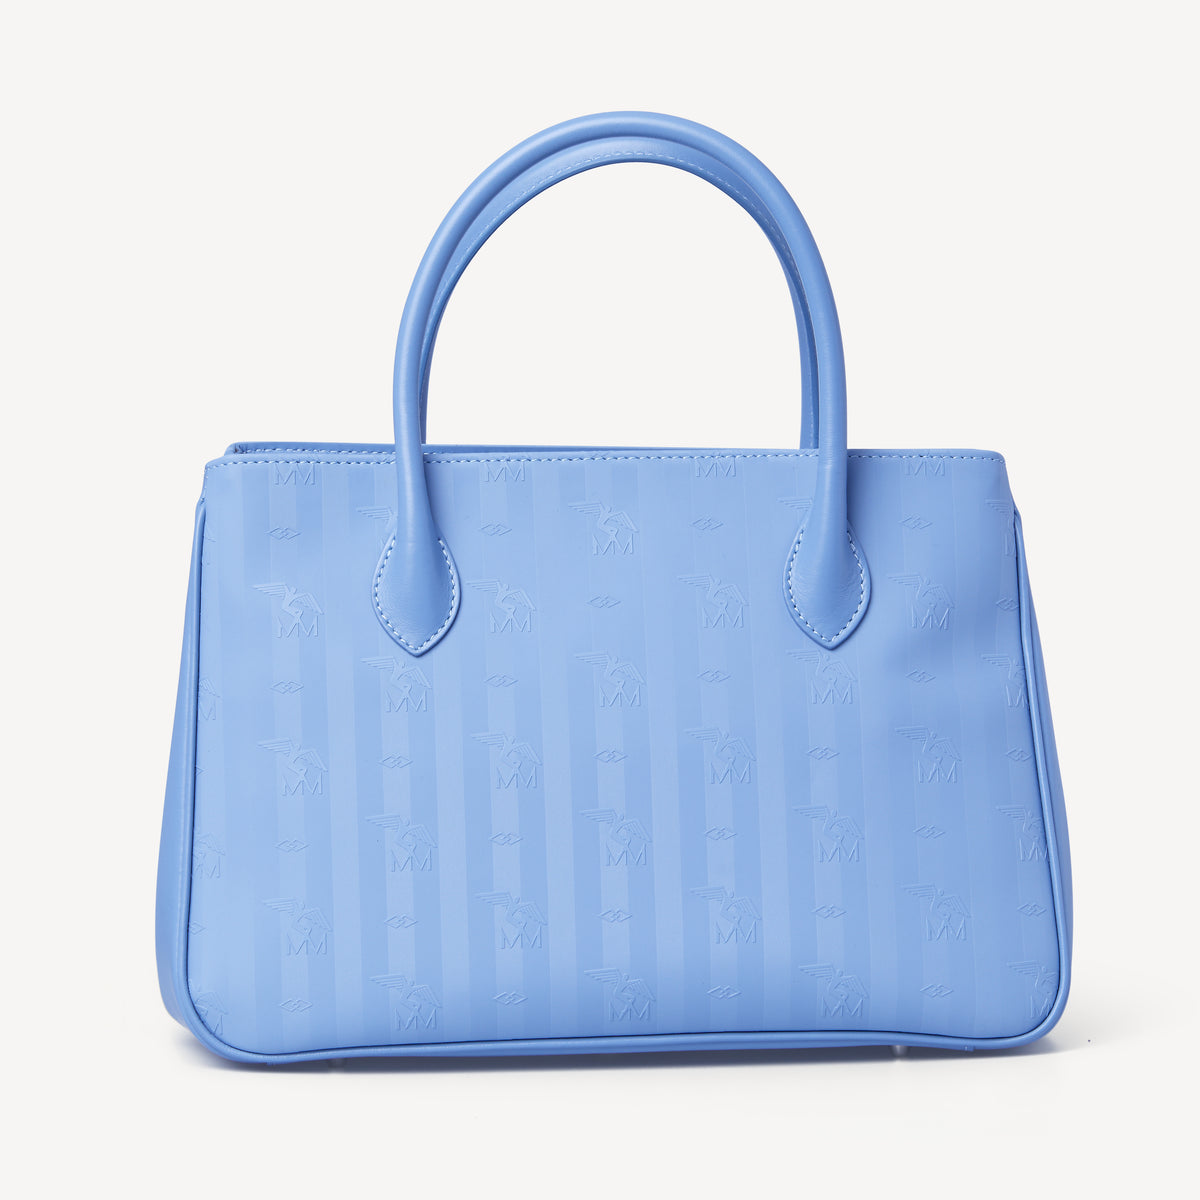 DONAT | Handtasche hellblau/silber - von hinten 